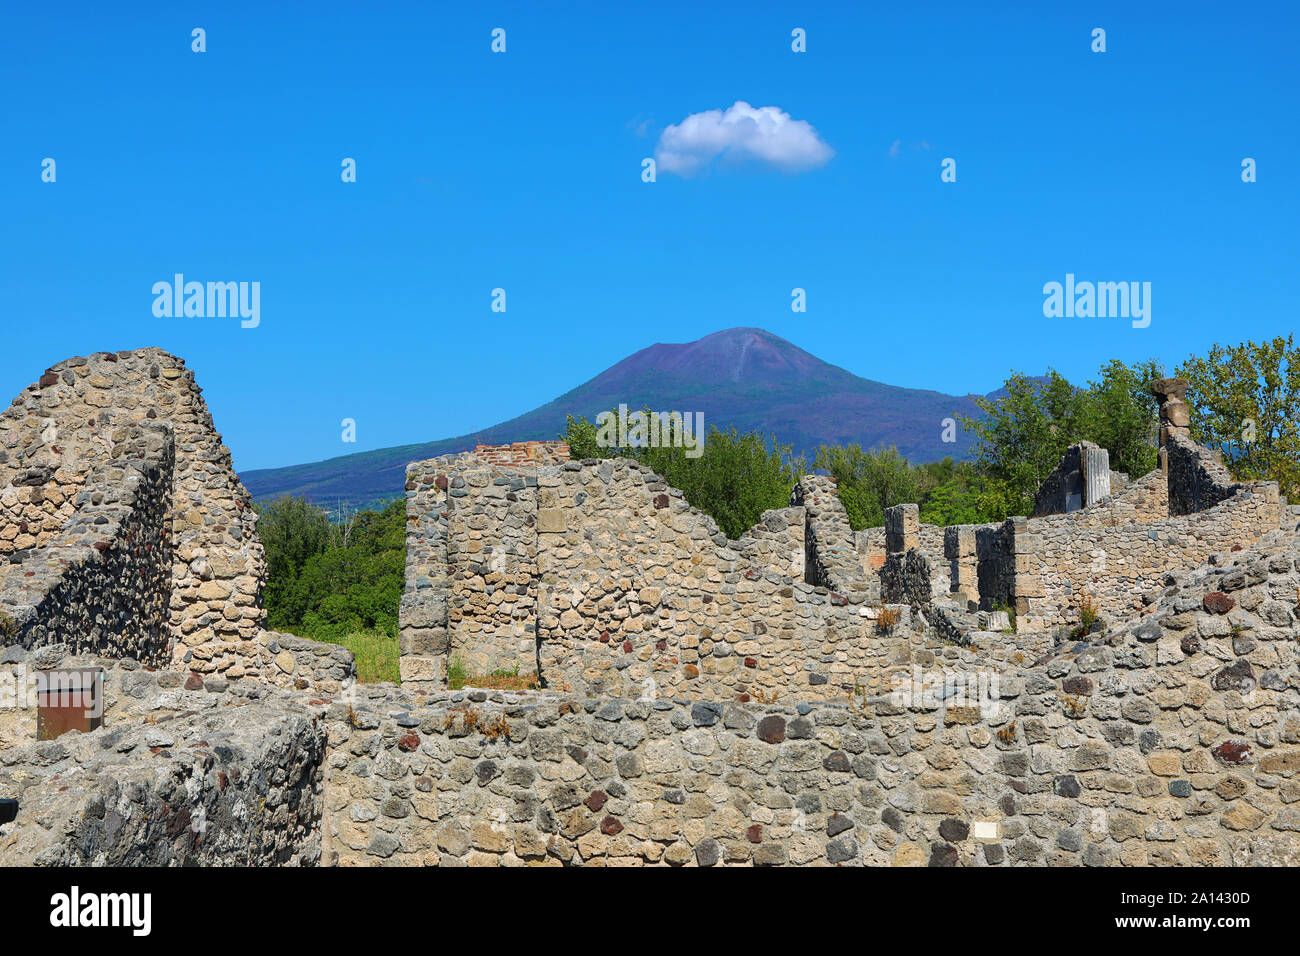 Ruines de l'ancienne ville romaine de Pompéi et le Vésuve, Italie Banque D'Images